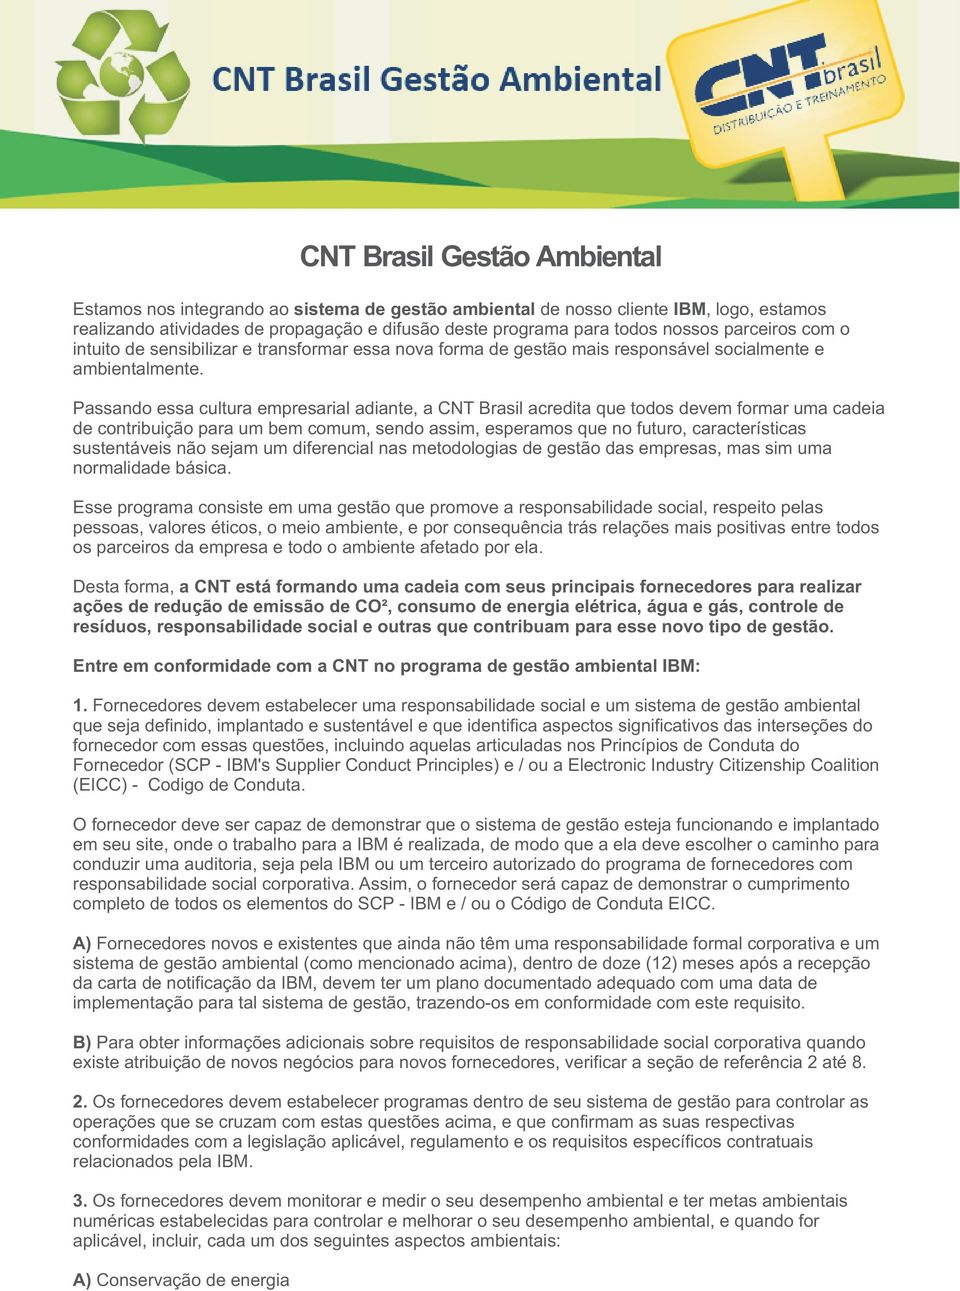 Passando essa cultura empresarial adiante, a CNT Brasil acredita que todos devem formar uma cadeia de contribuição para um bem comum, sendo assim, esperamos que no futuro, características